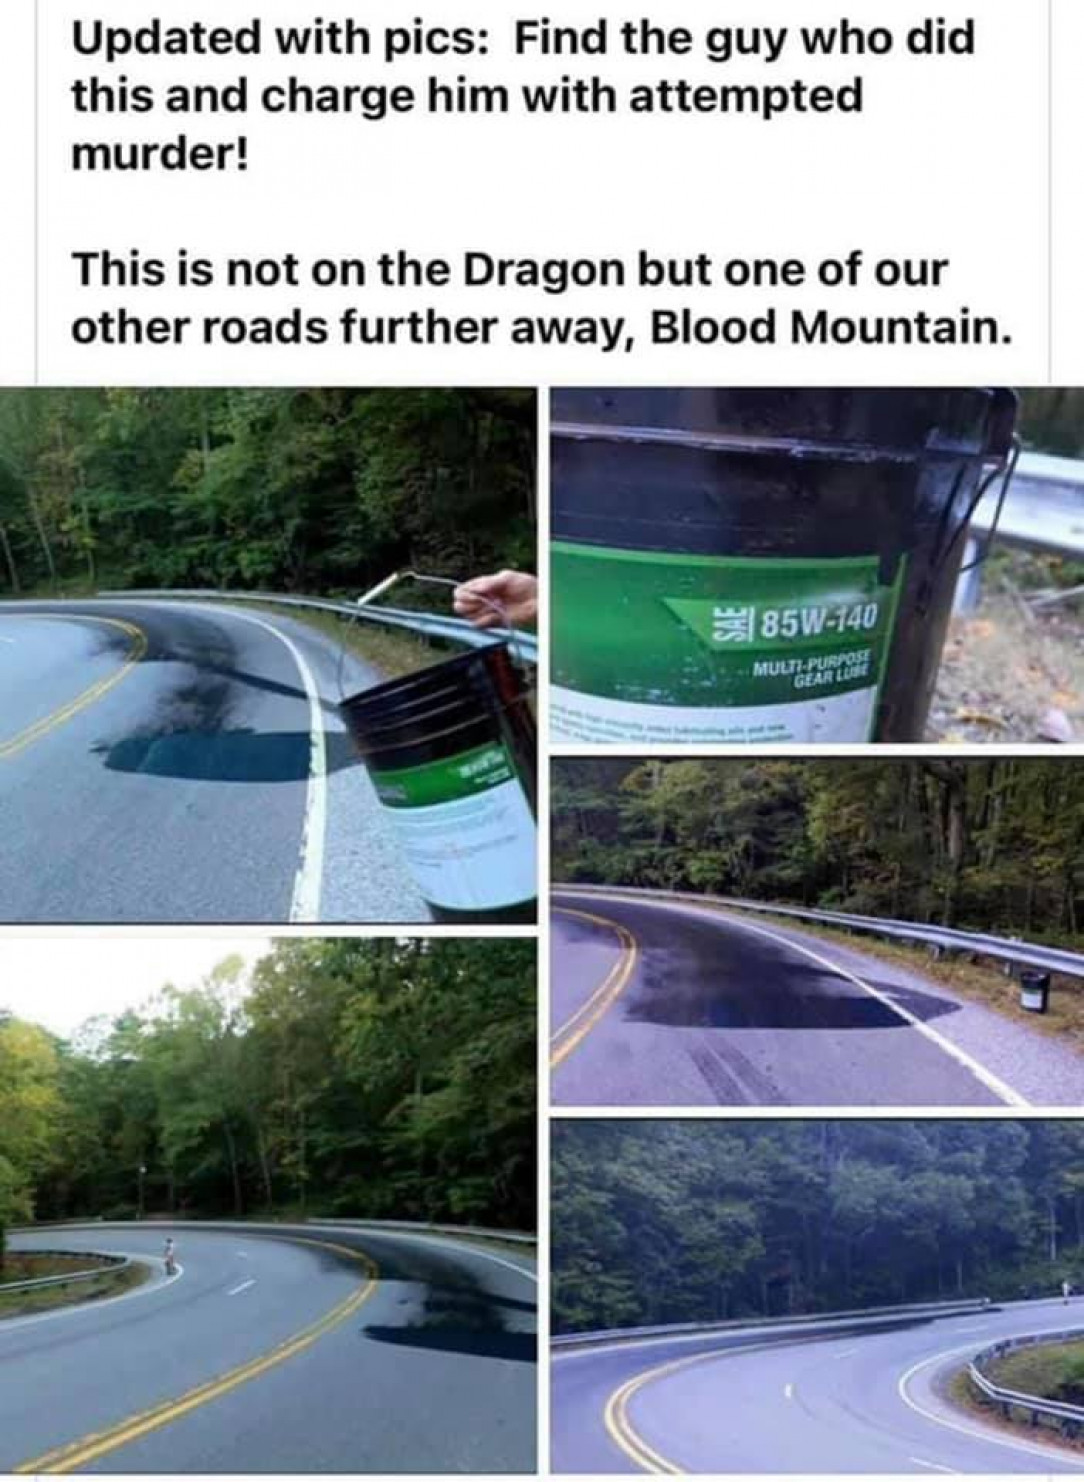 Purposefully making road dangerous